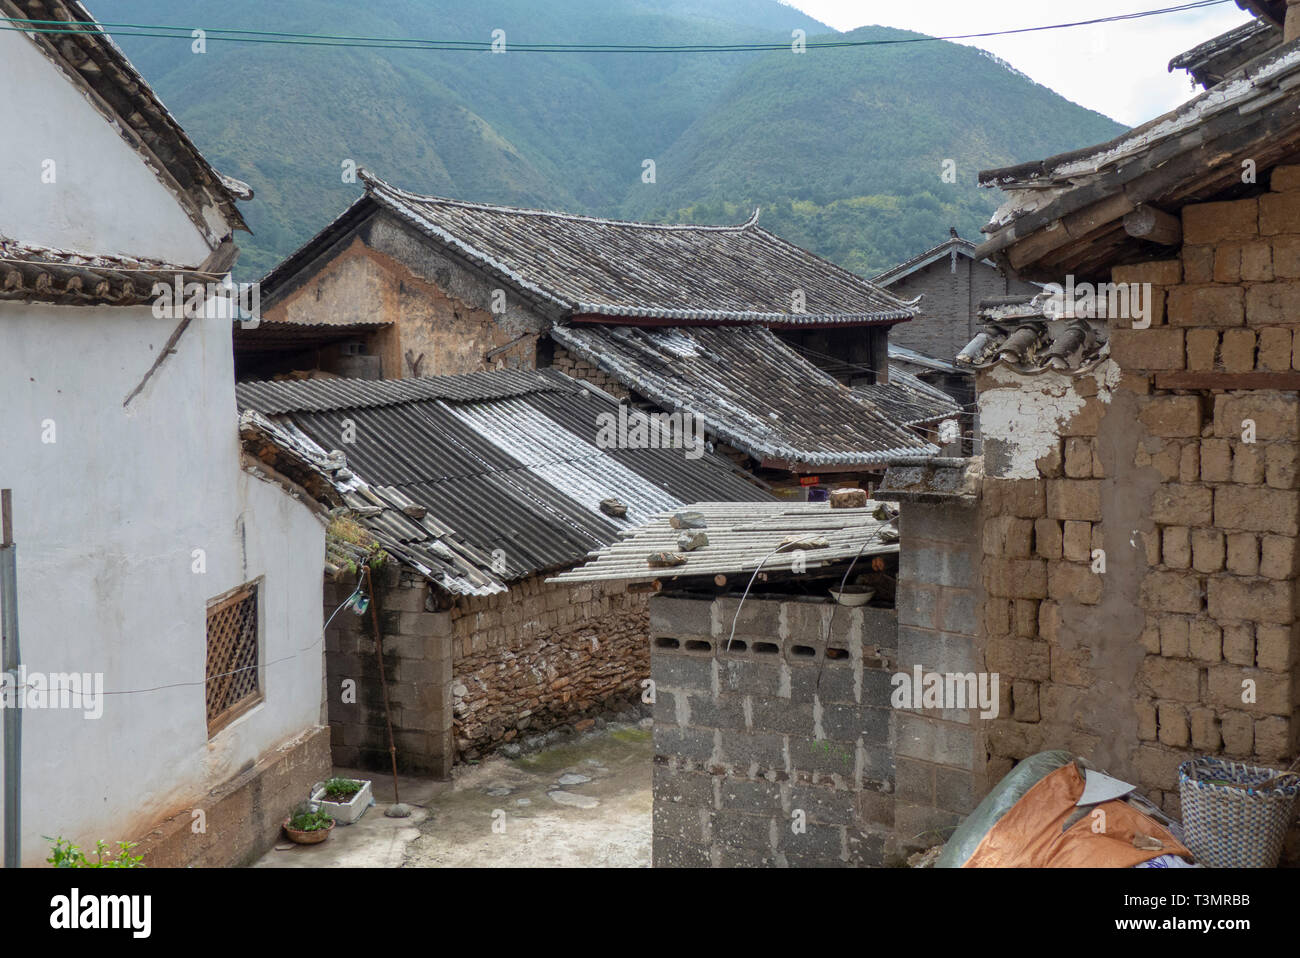 Traditional town of Shigu, Yulong County, Yunnan, China Stock Photo